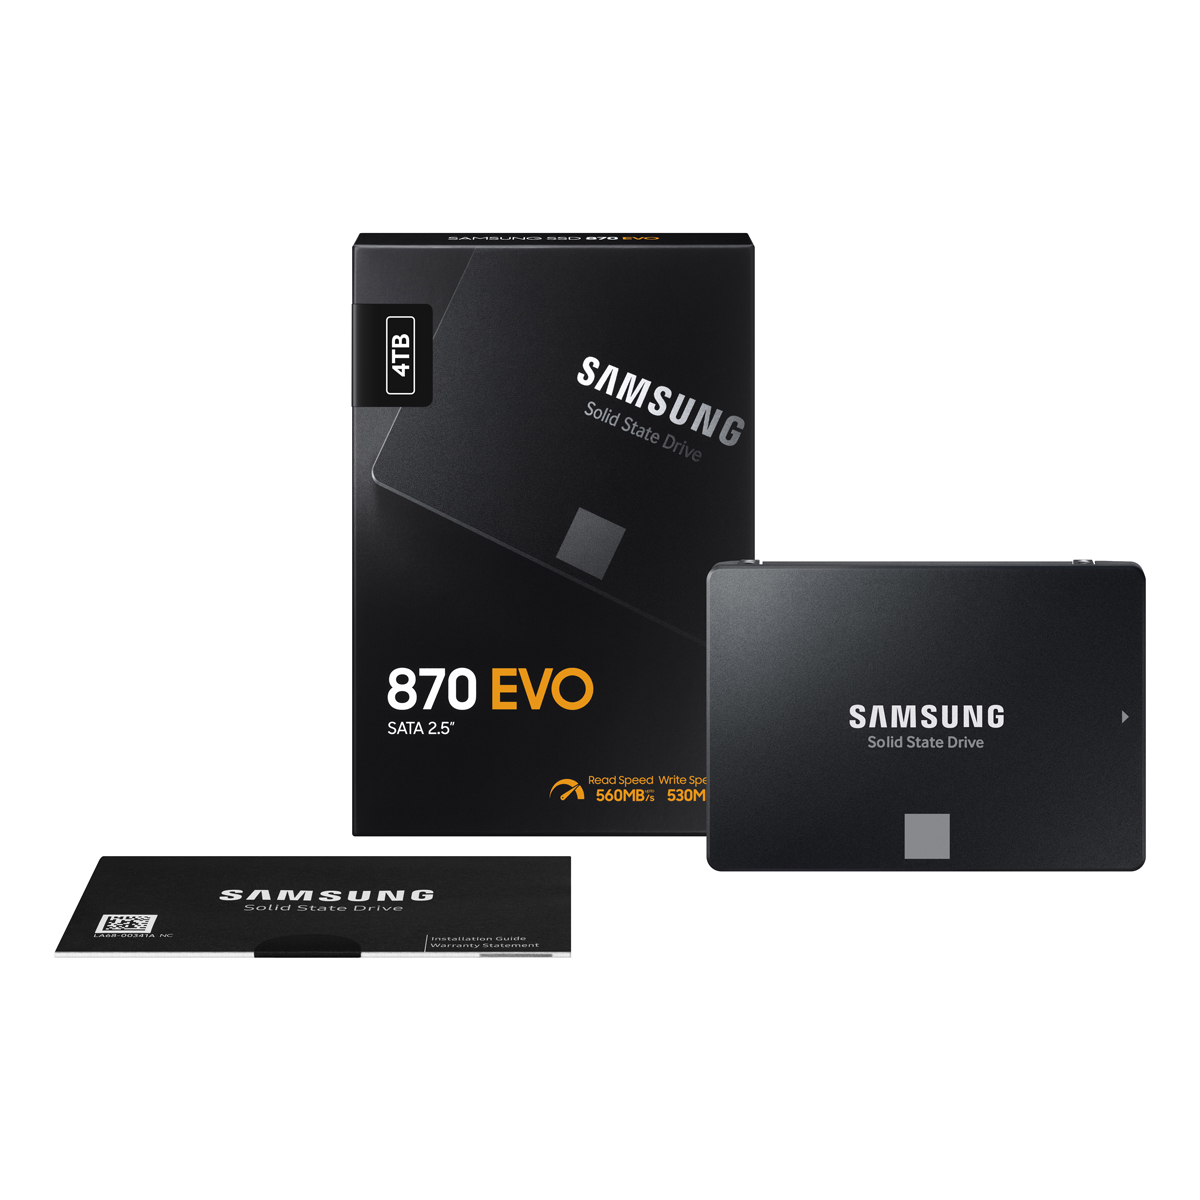 新品 Samsung 870 QVO 4TB 2.5インチ SSD